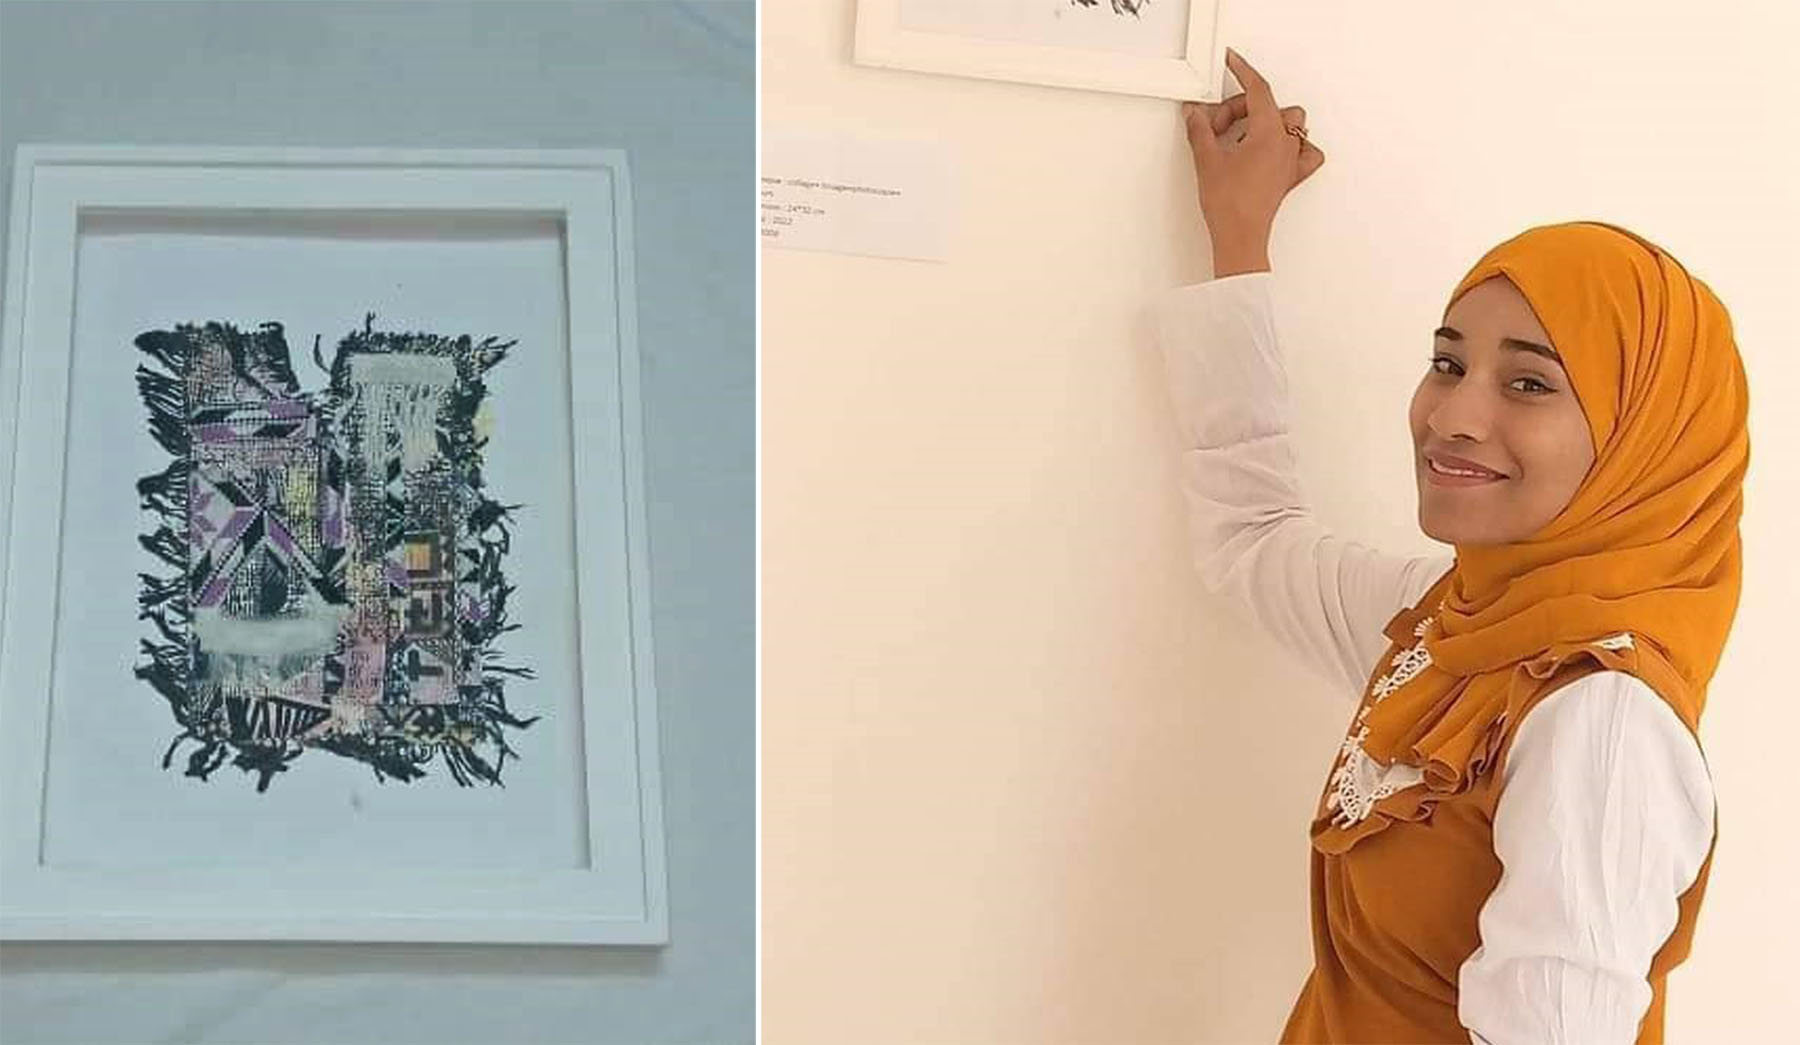 معرض أول للفنانة التشكيلية  شهرزاد التومي ضمن تظاهرة "انسانا ع الركح" 